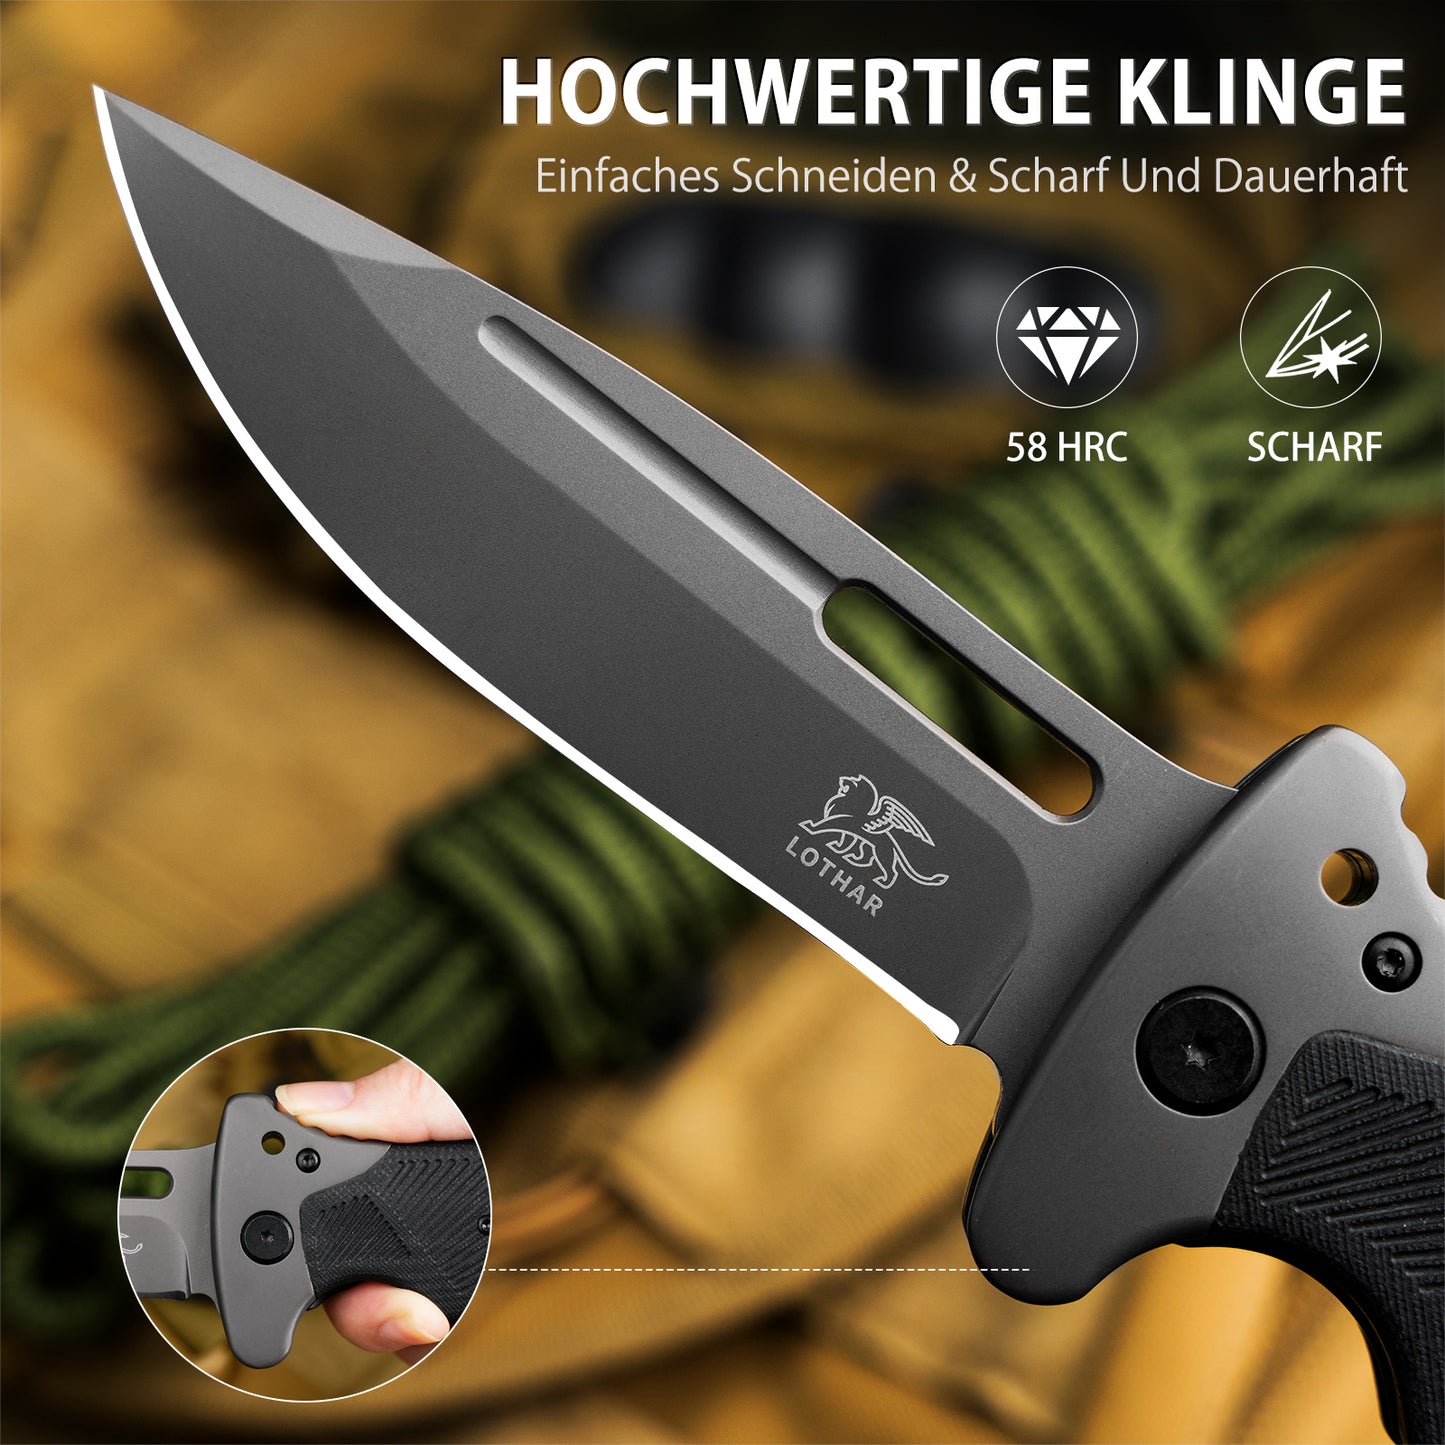 LOTHAR RHINO Zweihand Klappmesser, Mitführen in Deutschland erlaubt, Scharfe Klinge Zweihandmesser, Taschenmesser mit G10 Griff, Zweihandmesser für Camping & Survival